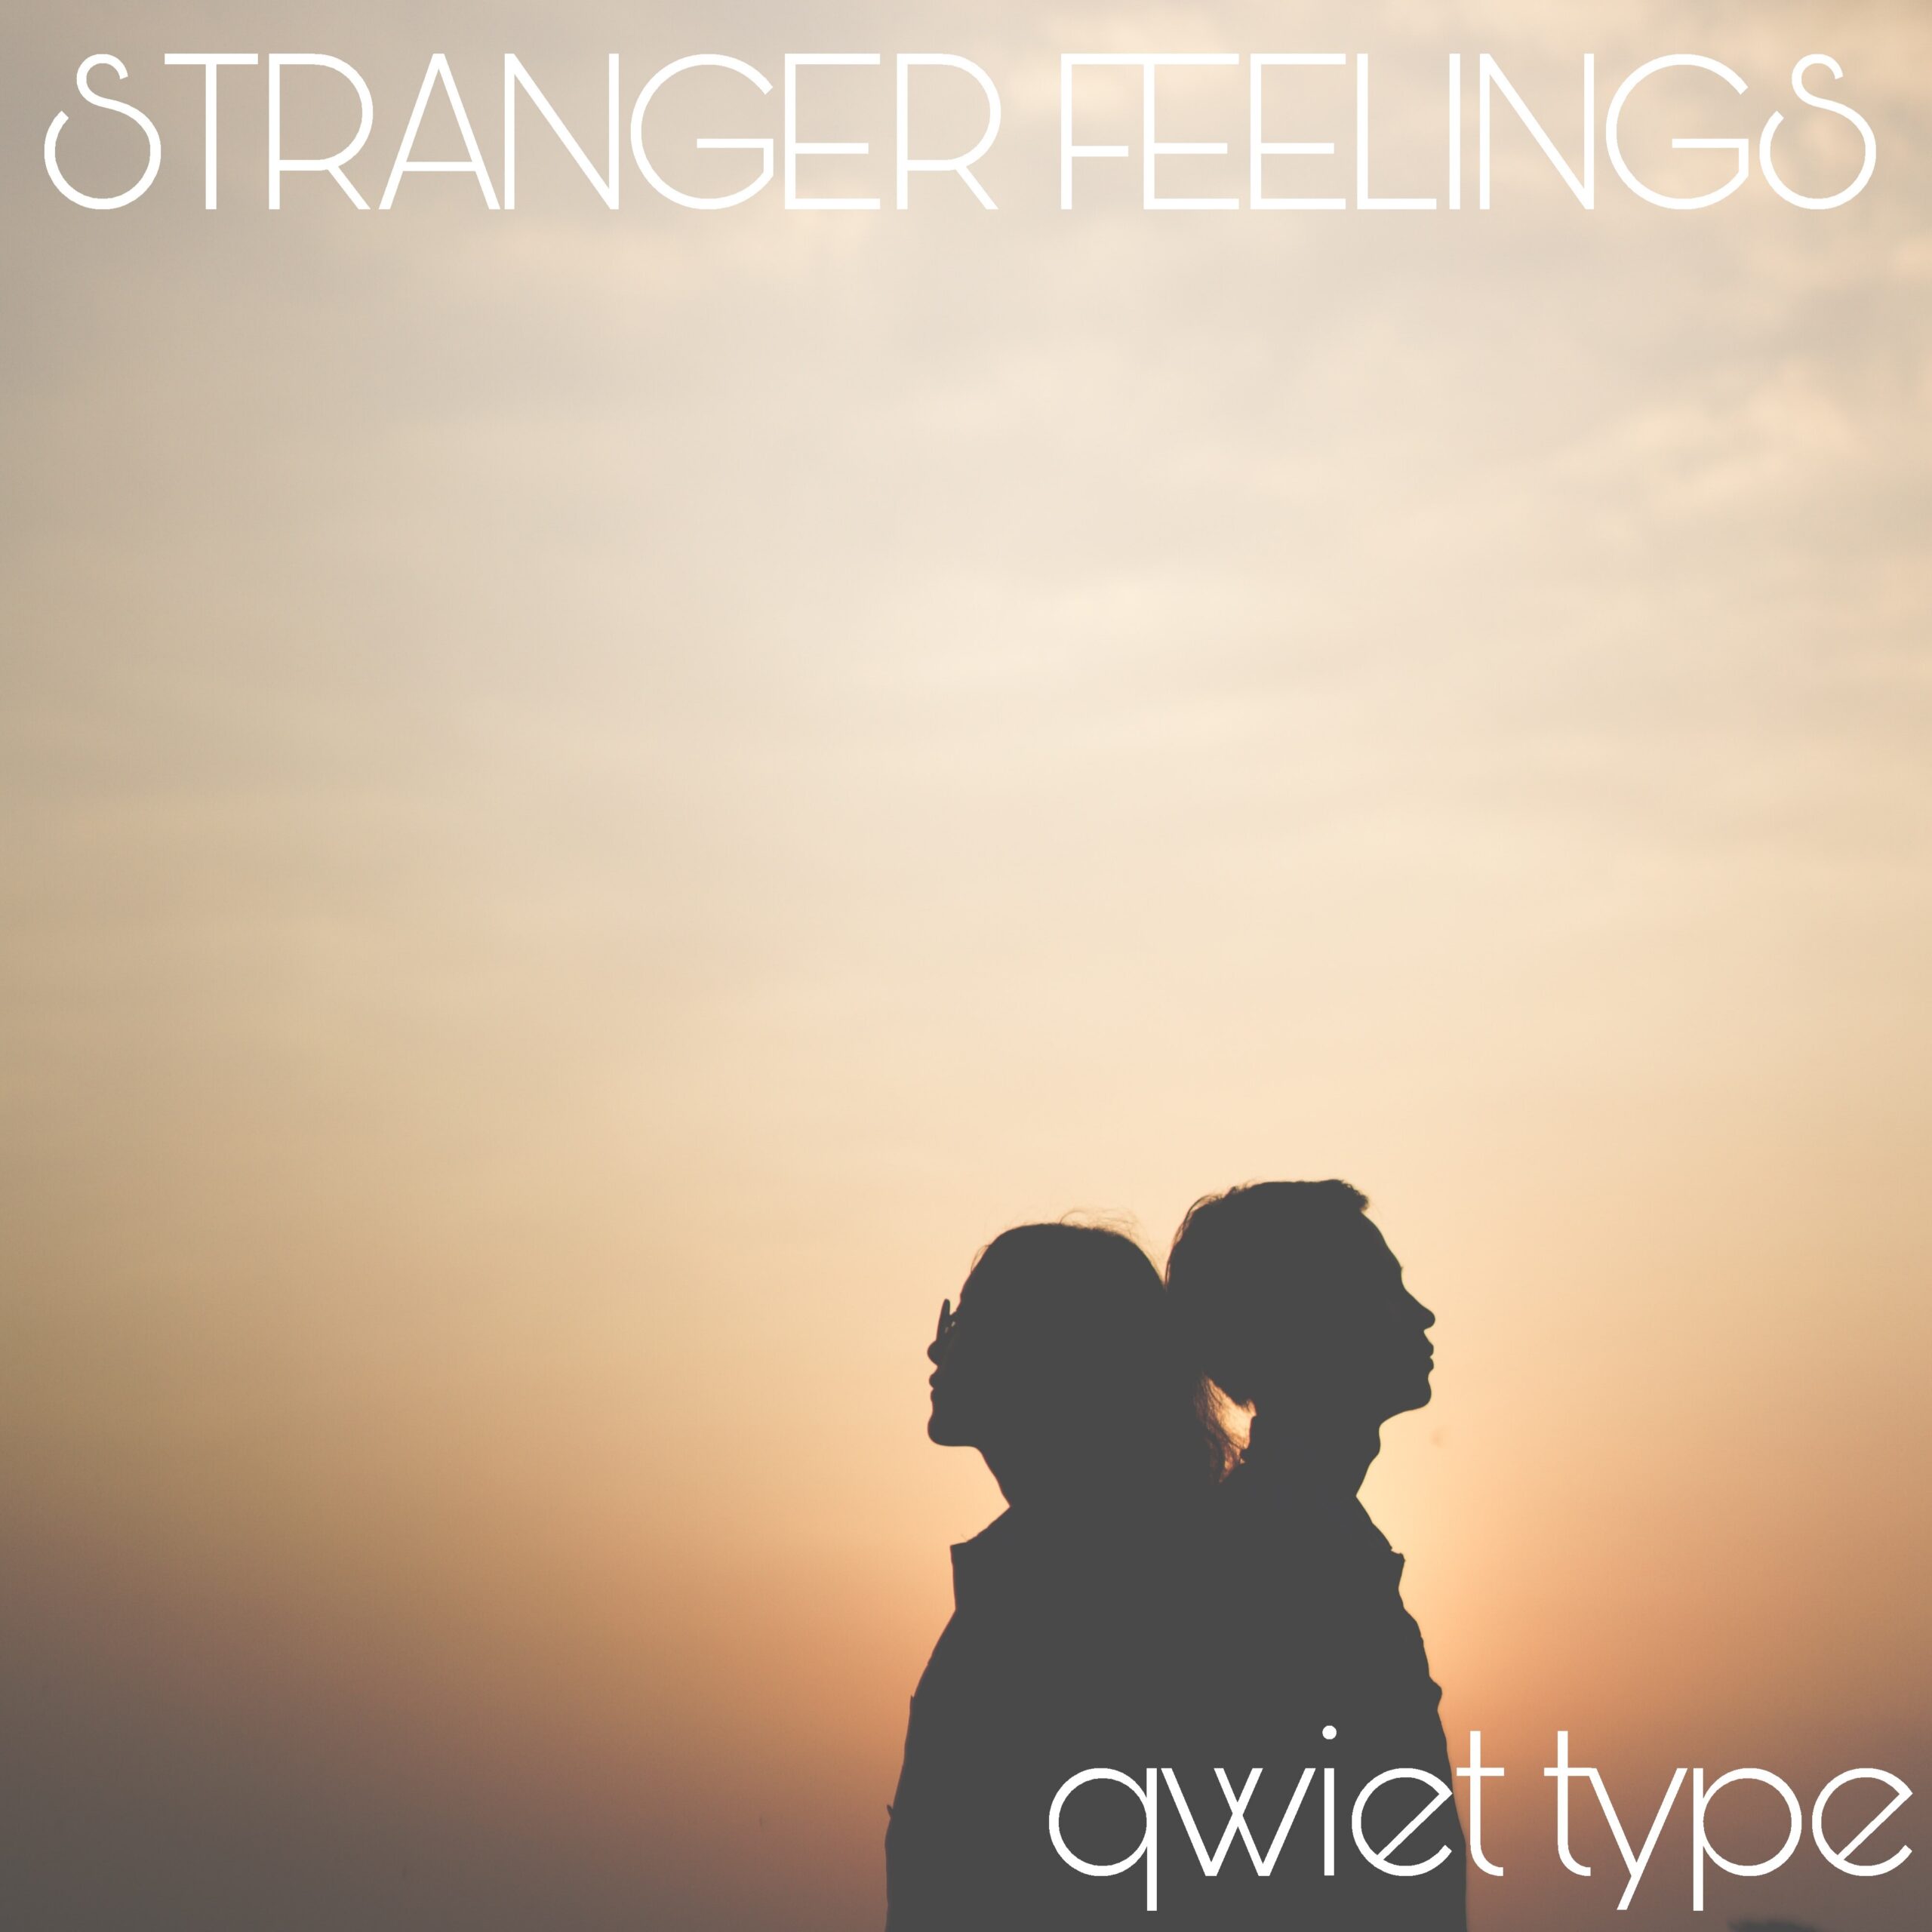 Qwiet Type Release “Stranger Feelings”